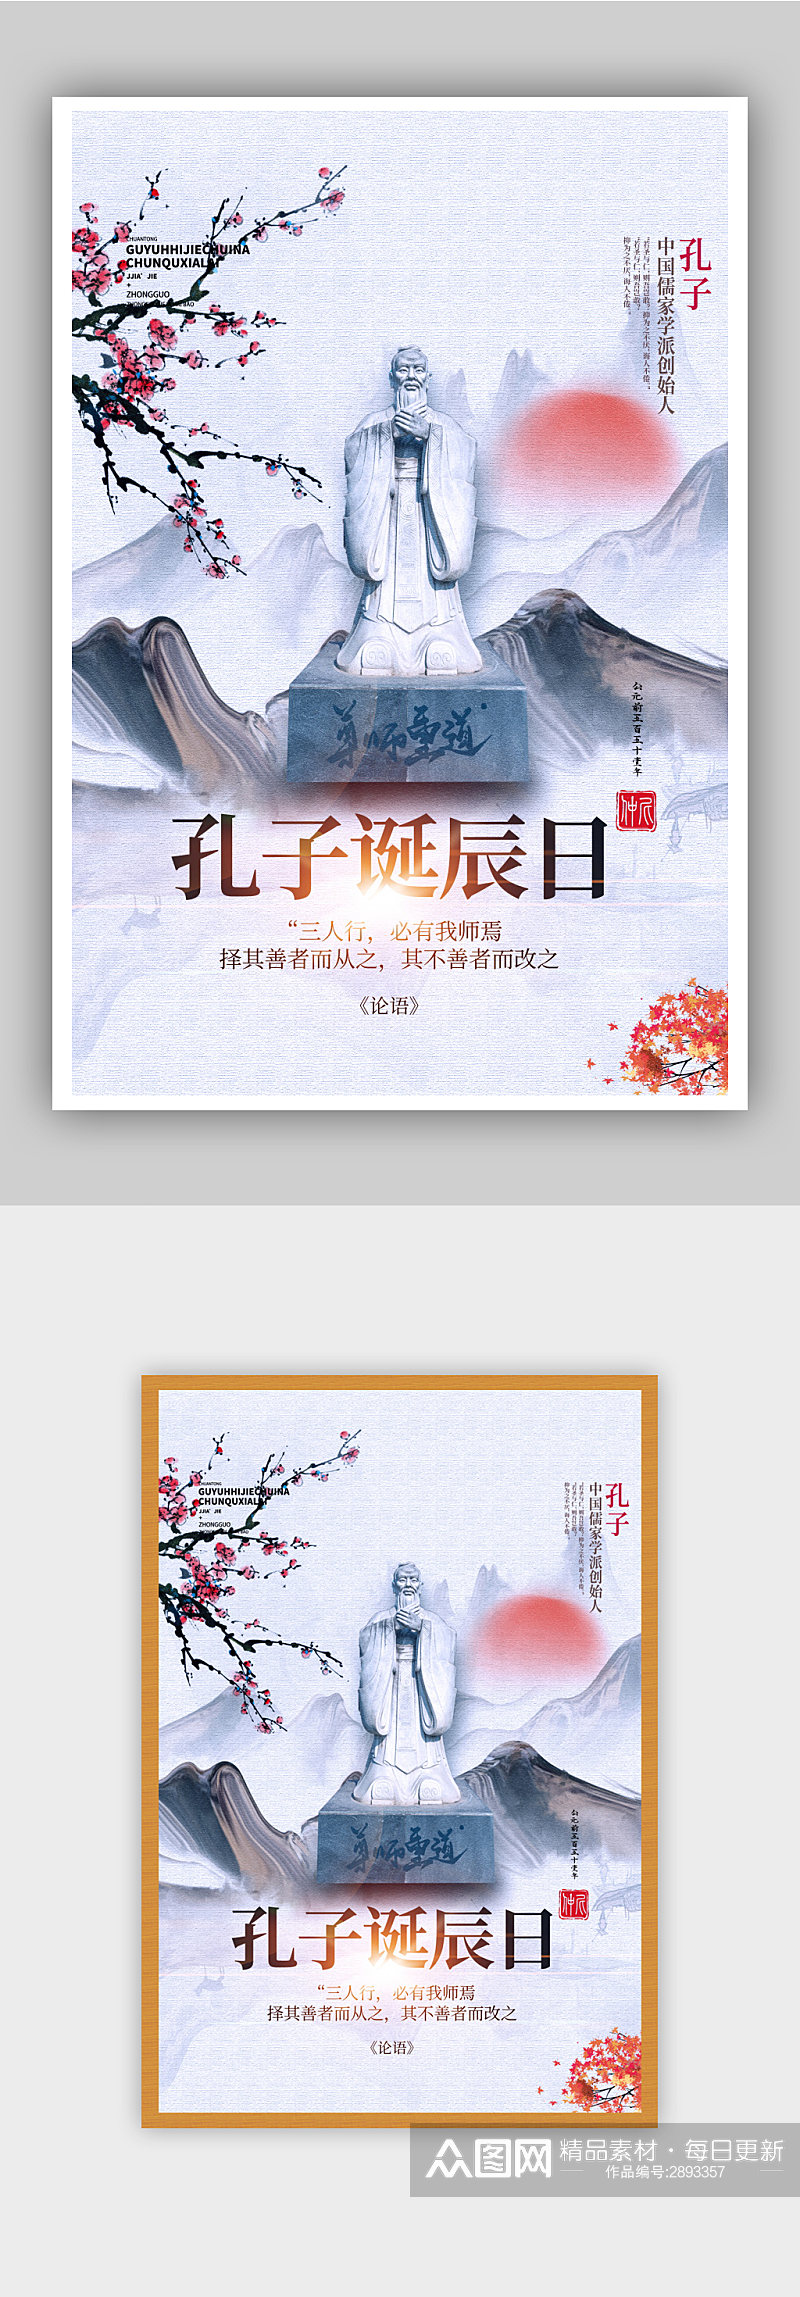 孔子诞辰日中国风海报设计素材